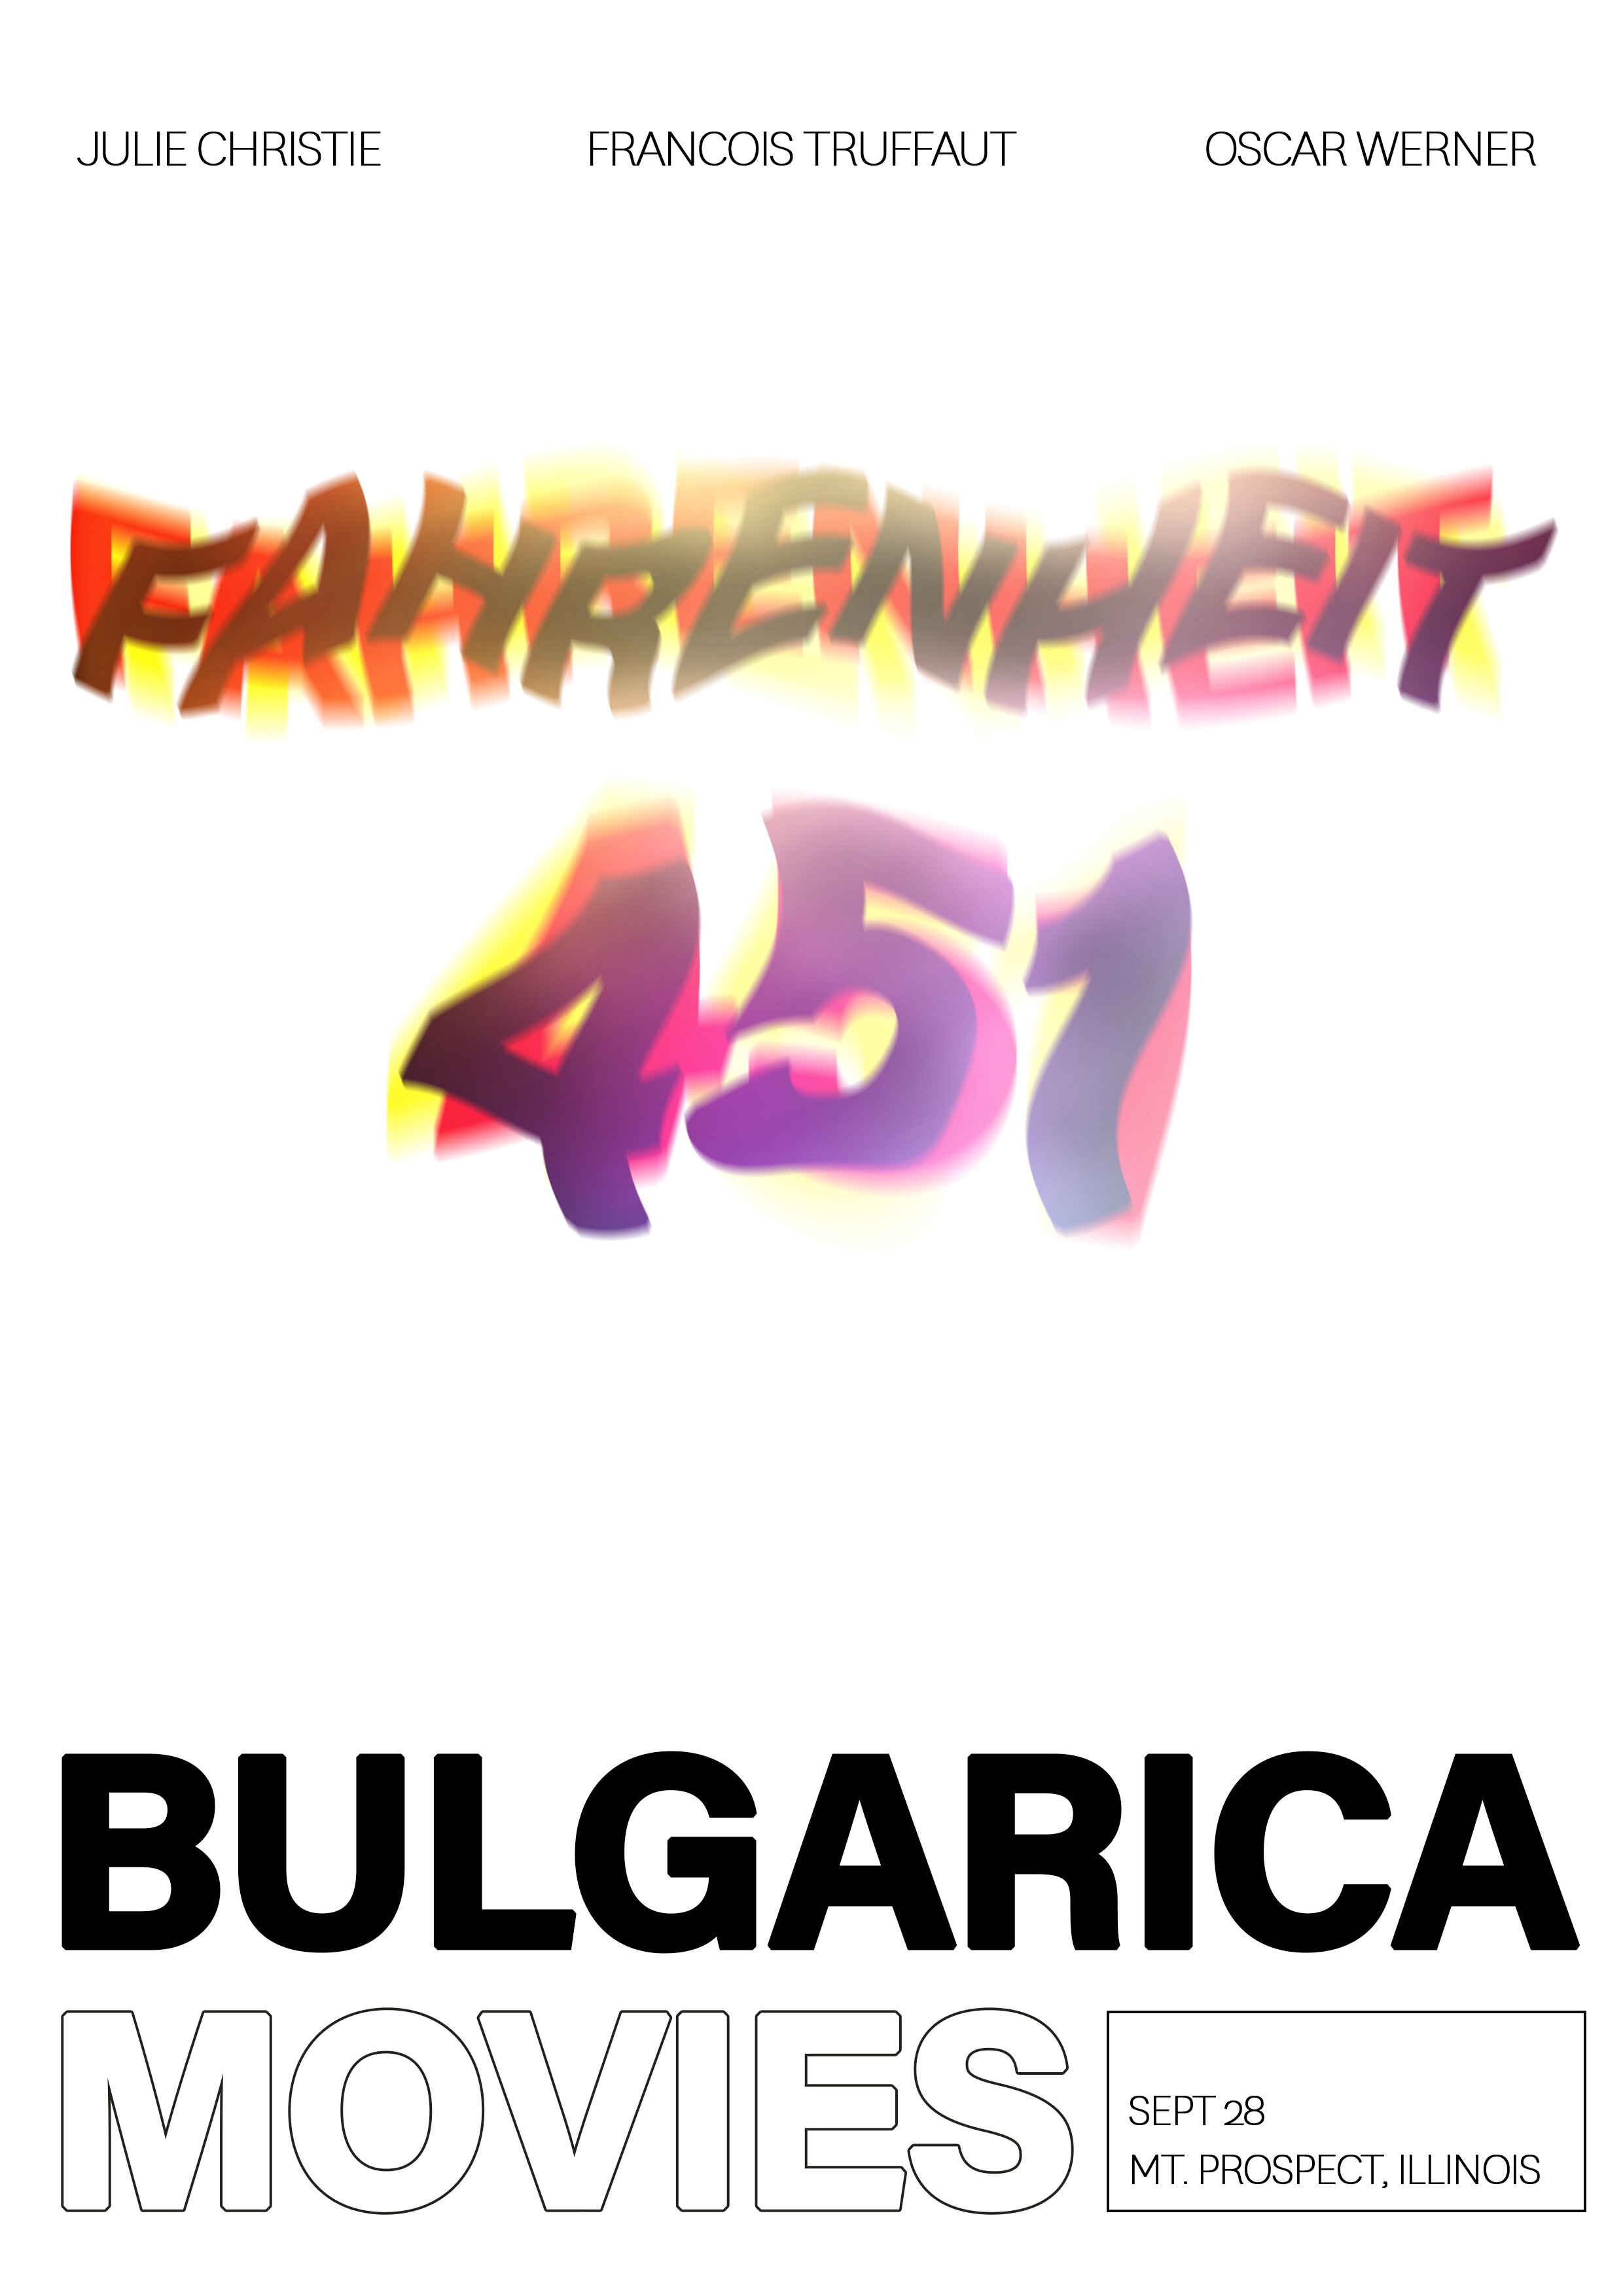 BULGARICA-POSTER-MOVES.jpg